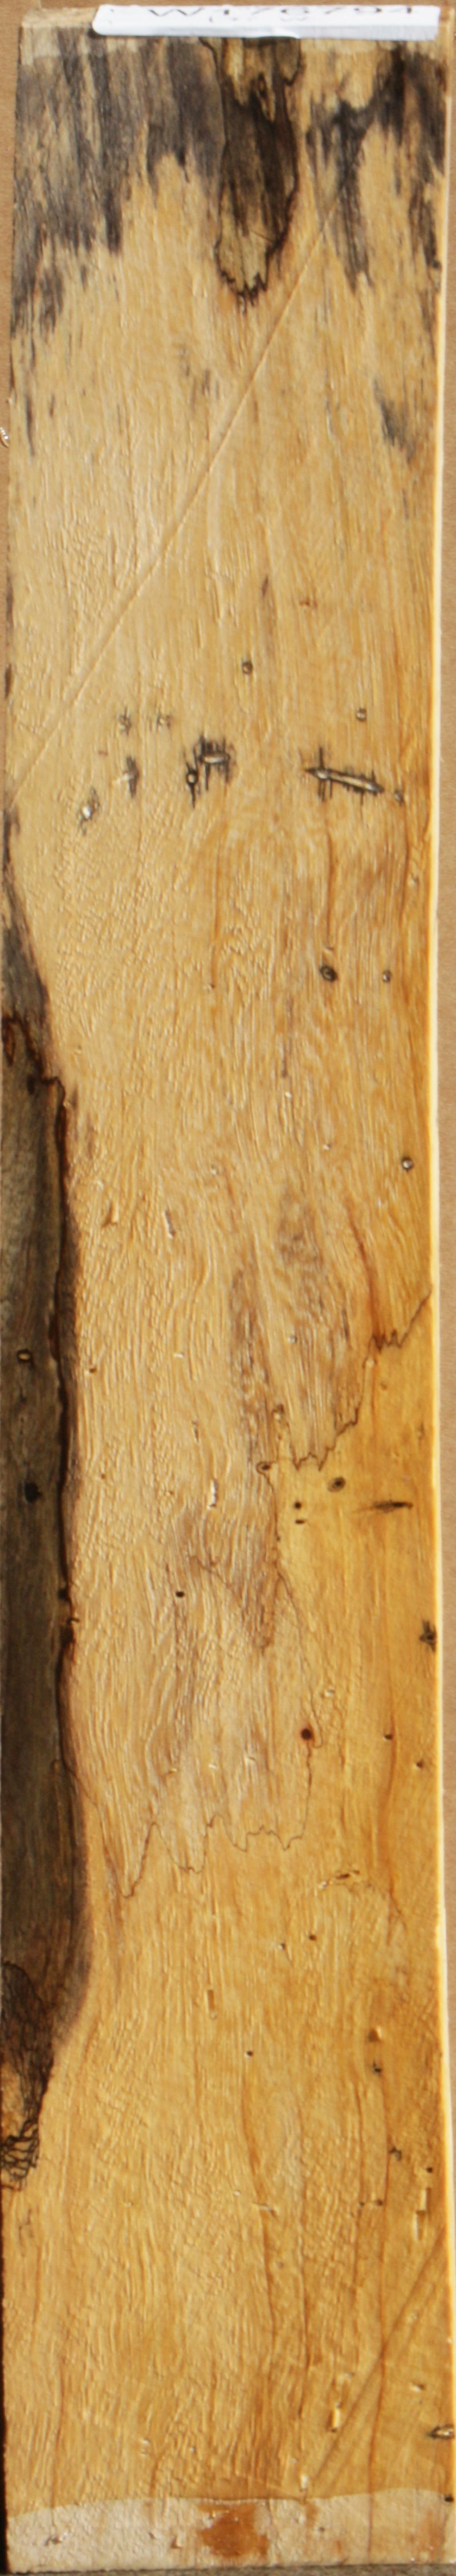 Figured Spalted Tamarind Lumber